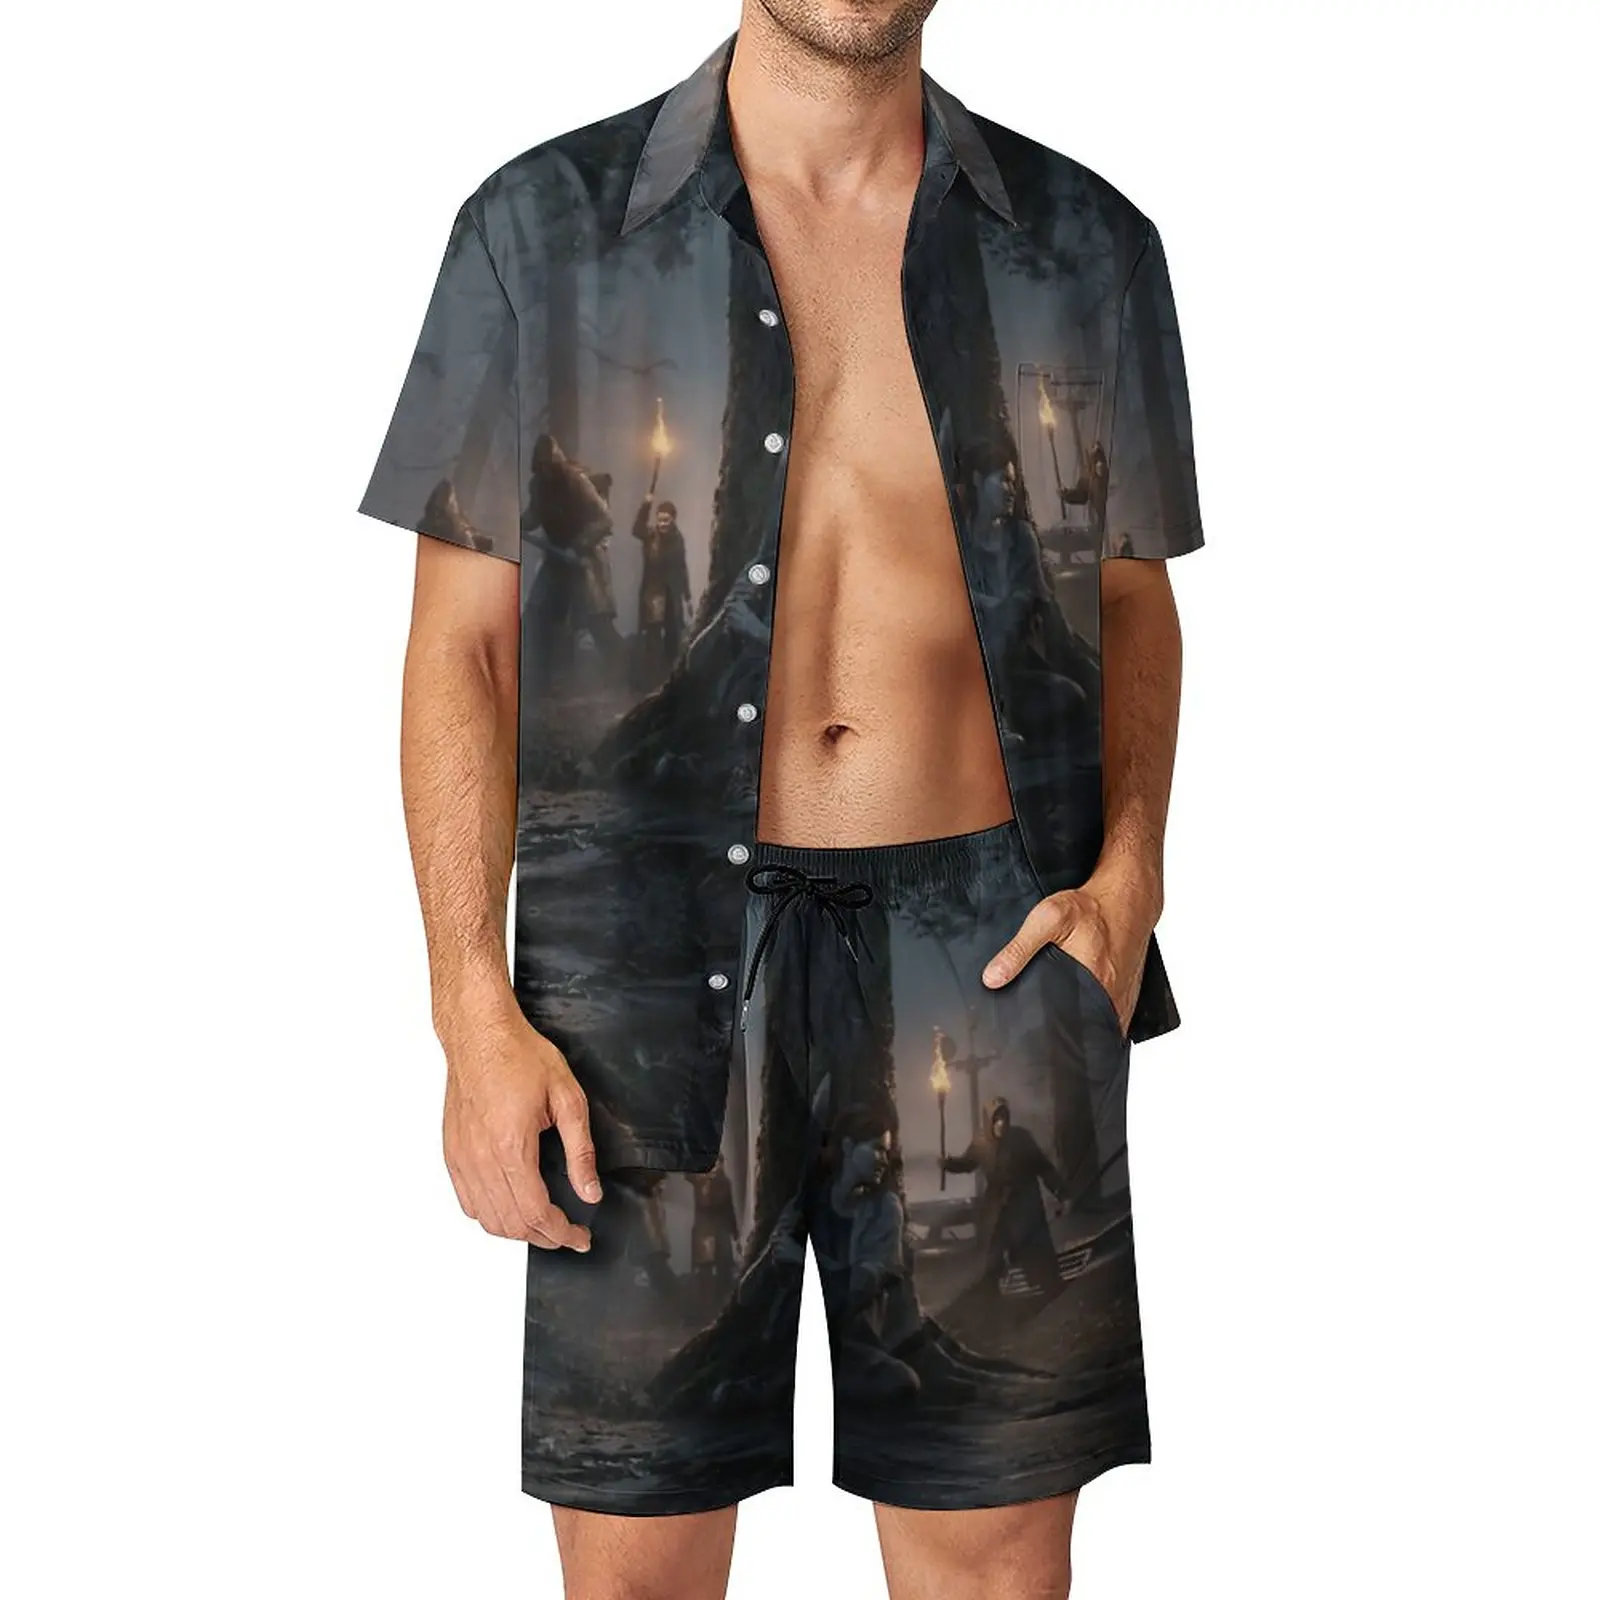 

Последний из США Часть II Дизайн Мужской пляжный костюм 2 штуки координаты высокое качество выходной размер США